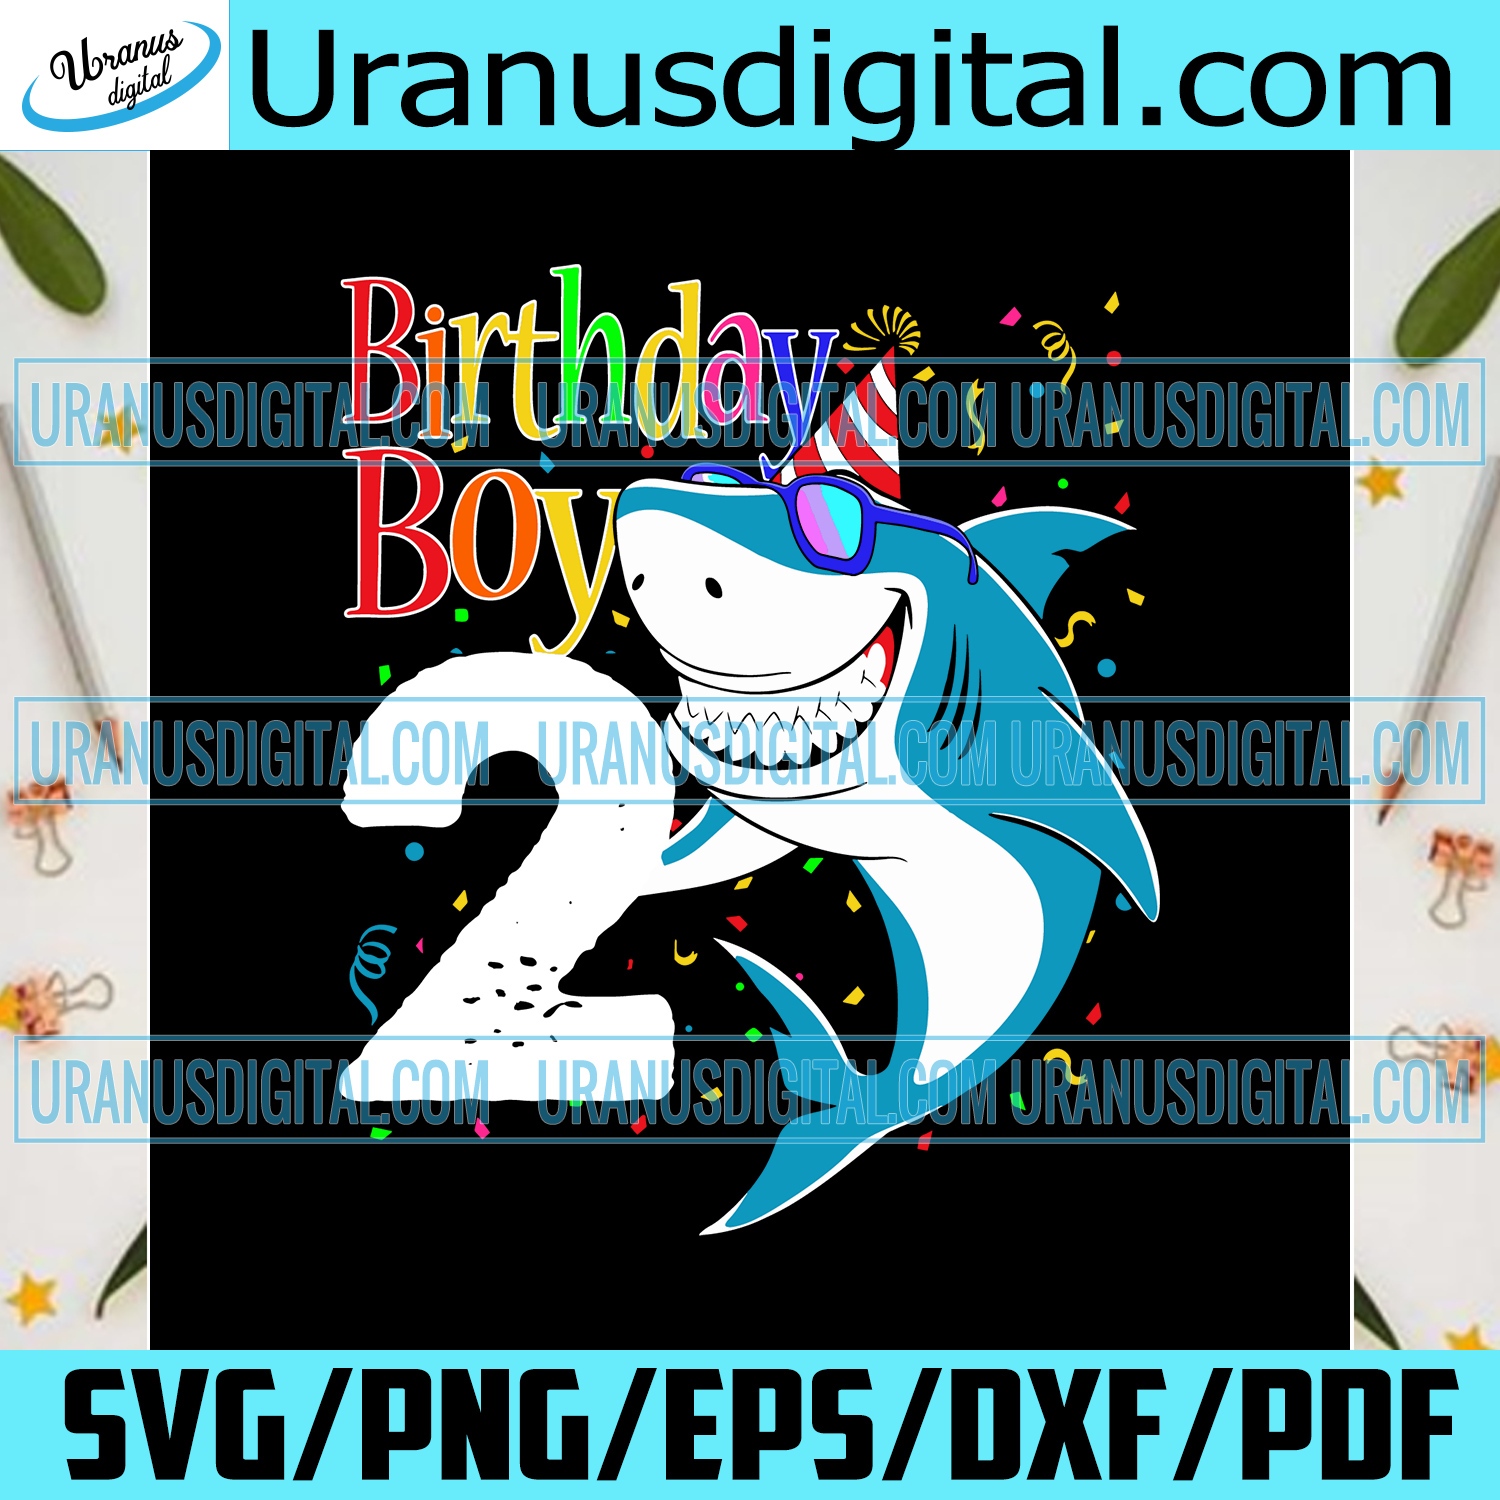 Download 2nd Birthday Boy Svg Birthday Svg Birthday Gift Birthday Boy Svg 2 Uranusdigital SVG, PNG, EPS, DXF File